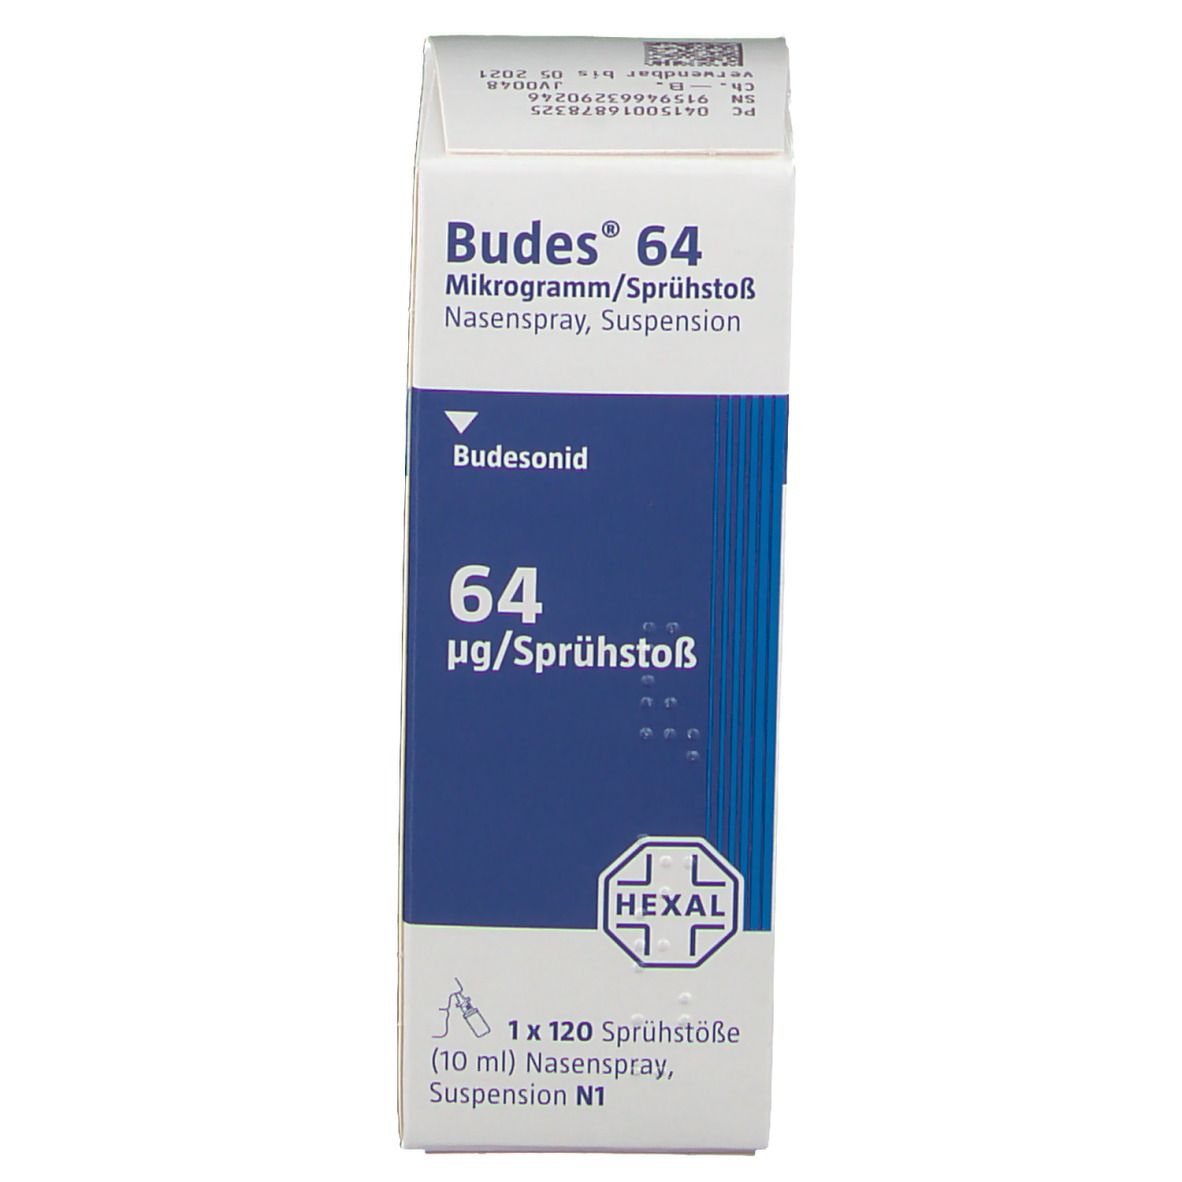 Budes® Nasenspray 64 μg/Sprühstoß